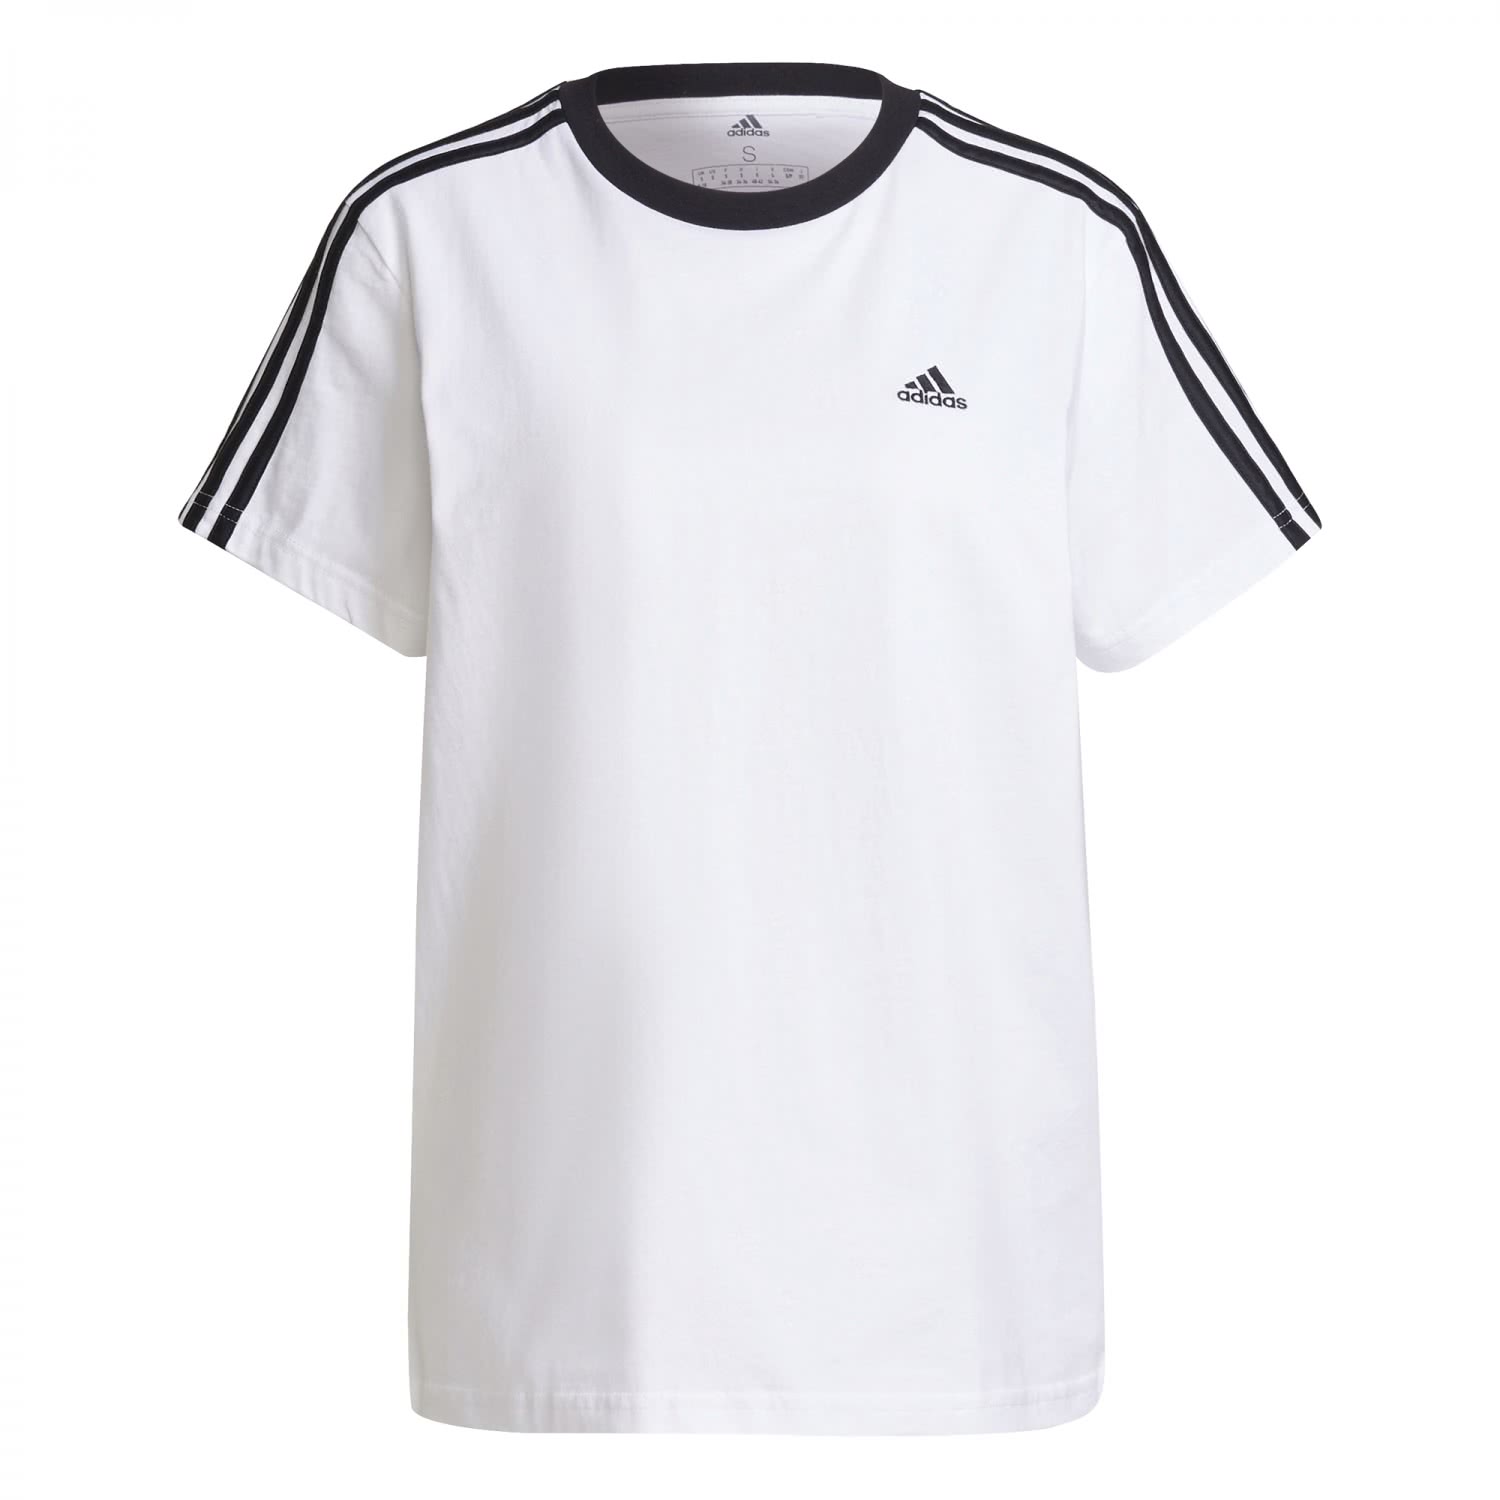 beloning vleet Chemicus Adidas Damen Performance T-Shirt Freizeitshirt weiß-schwarz | Shirts |  Kleidung | Herren | MAM-SPORT | von Sportler zu Sportler